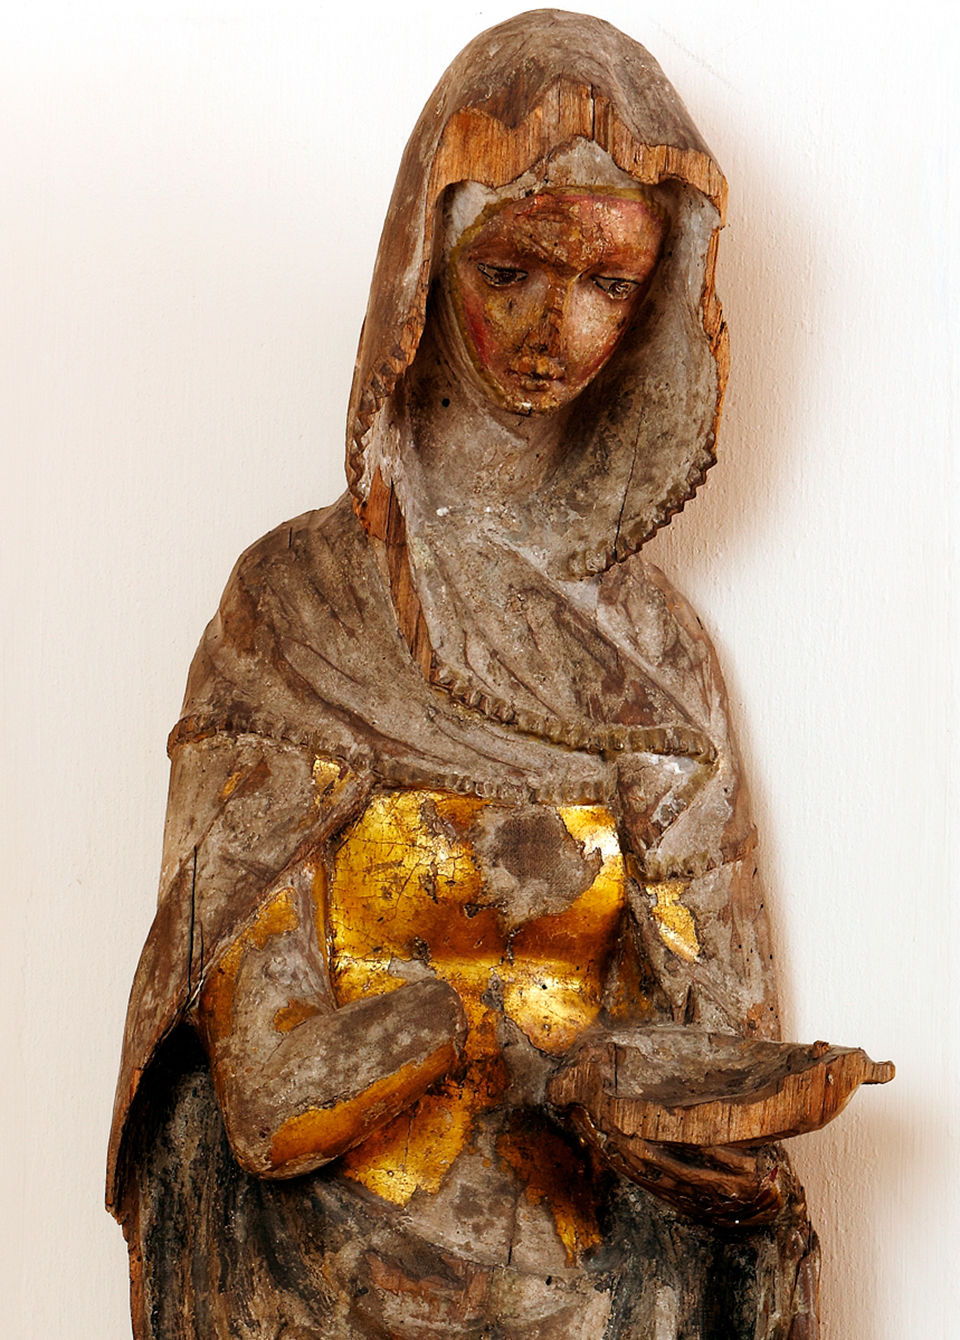  Neuenburg Elizabeth figurine, c.1360, Photo: © Kulturstiftung Sachsen-Anhalt